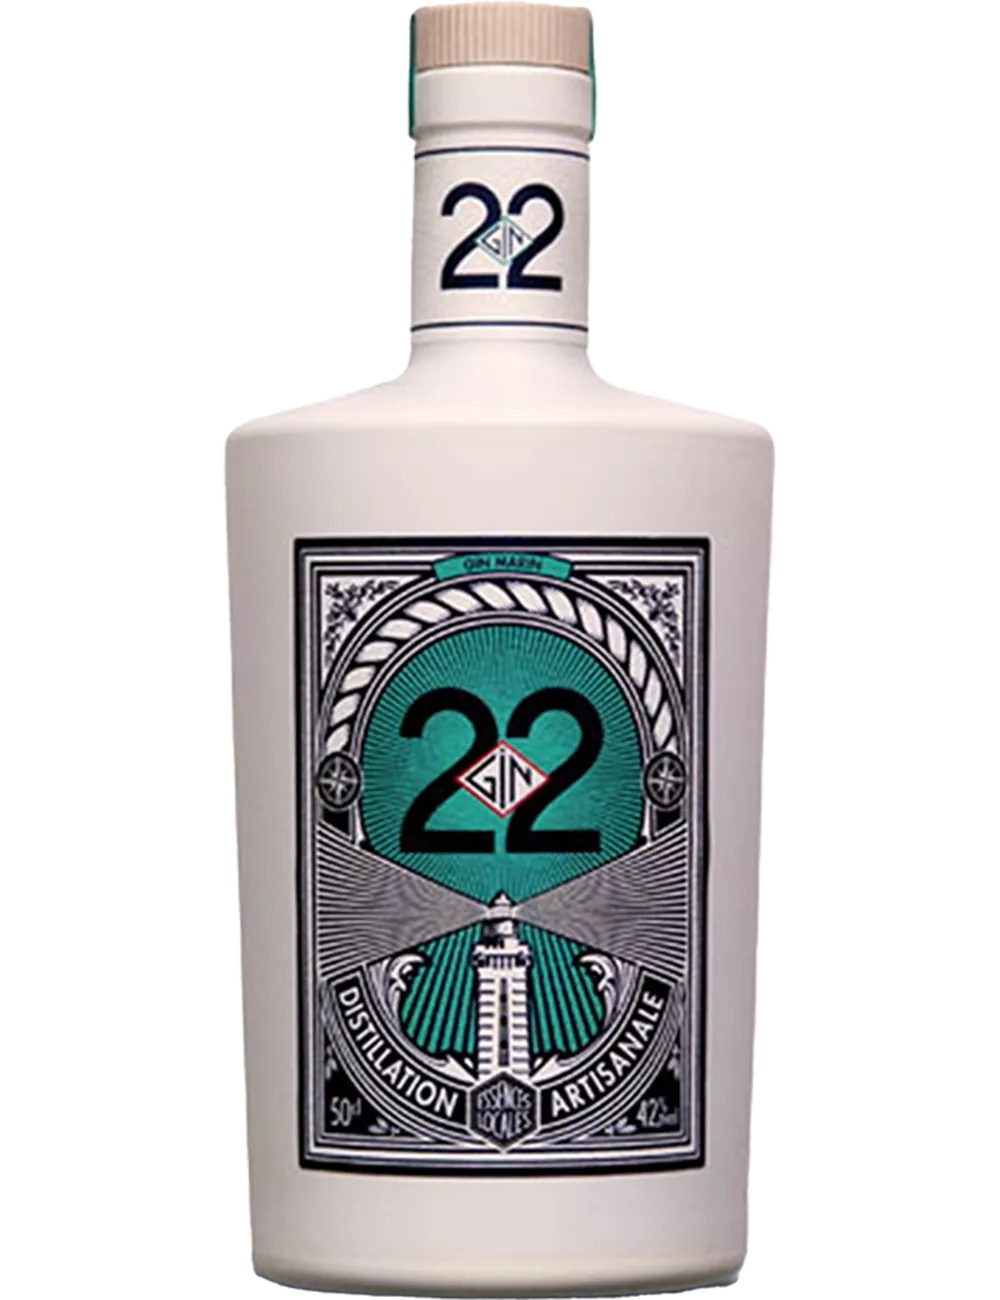 Gin 22 - Distilled gin